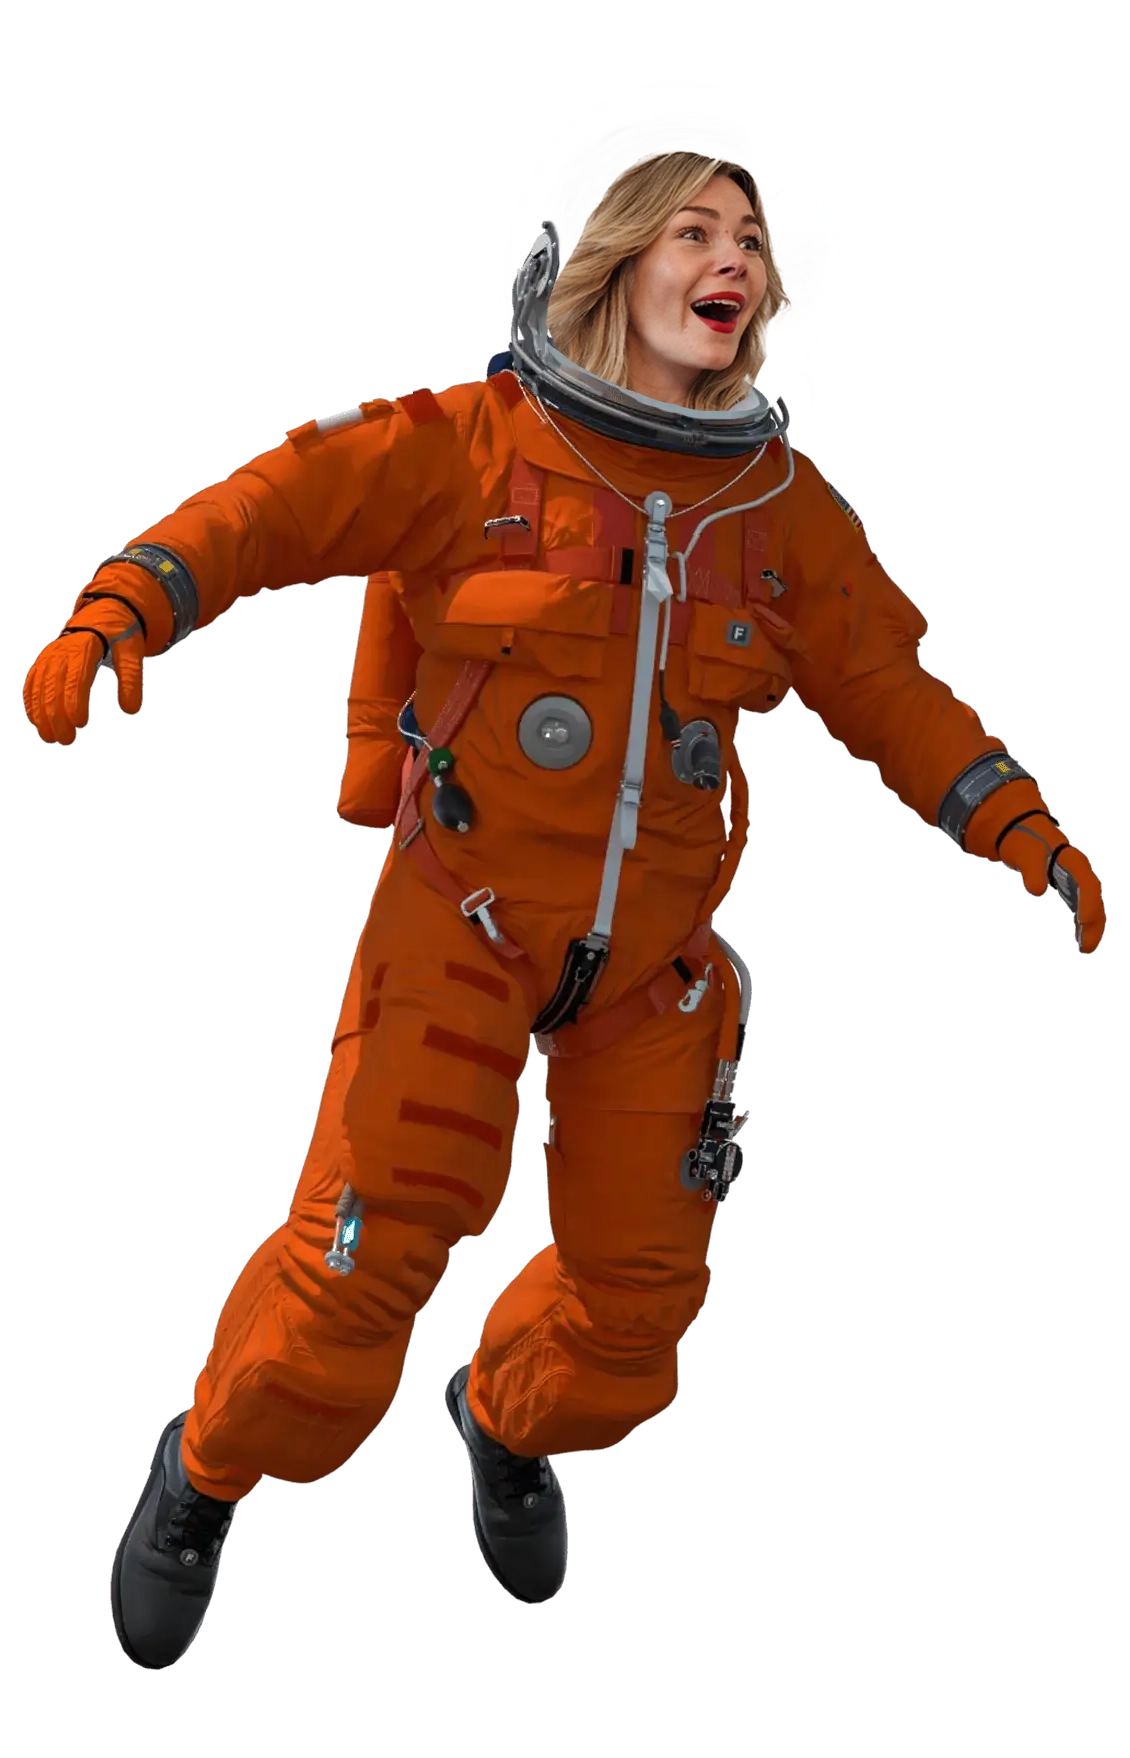 Elise_astronaut_homepage